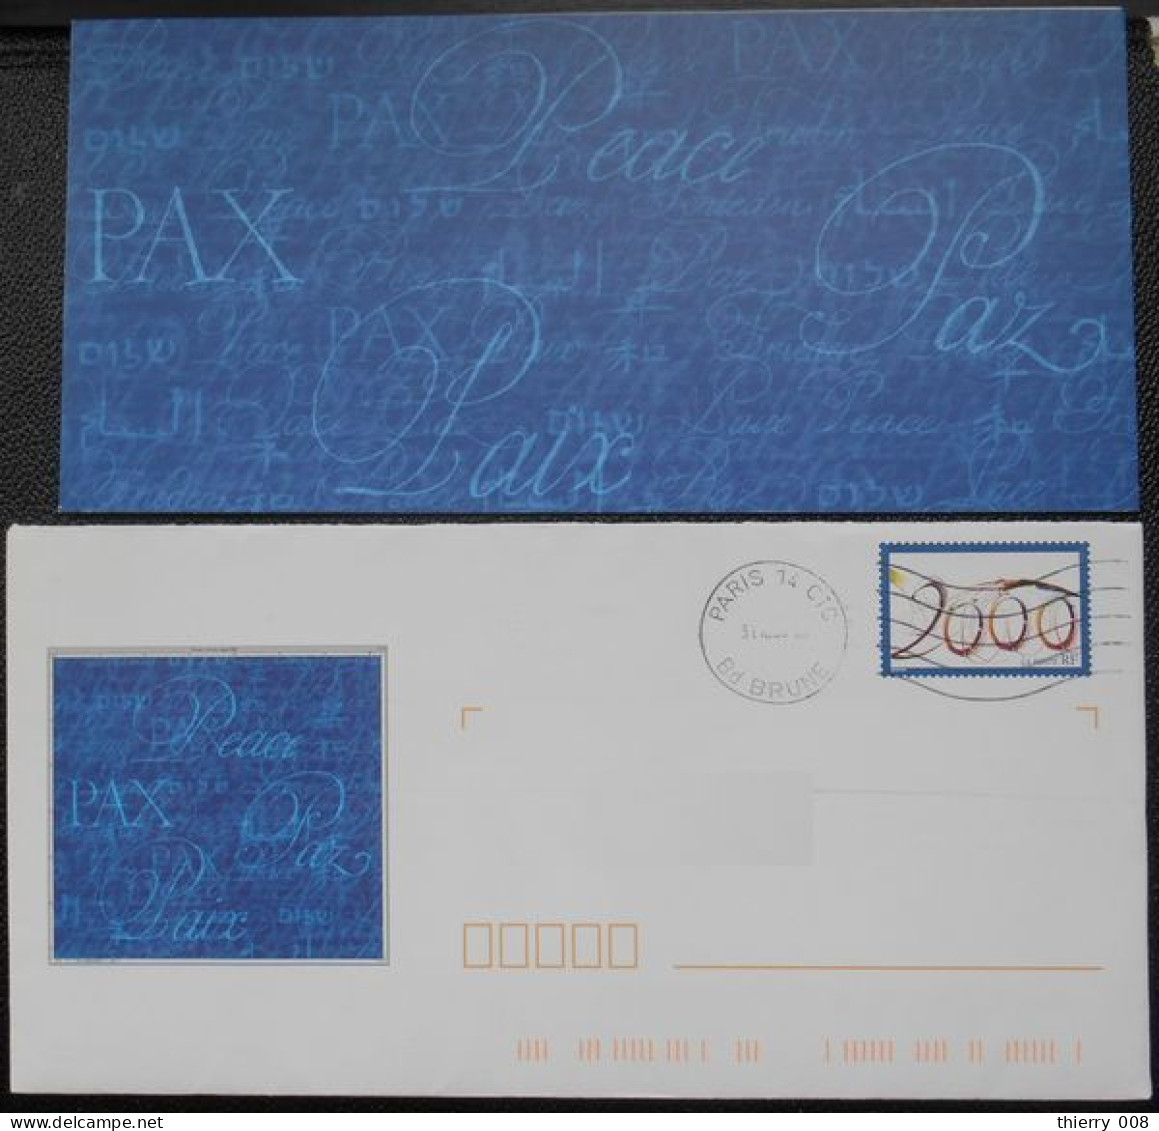 Enveloppe PAP De Service La Poste Timbre An 2000  Oblitéré  Avec Son Carton Non écrit - Lettres & Documents